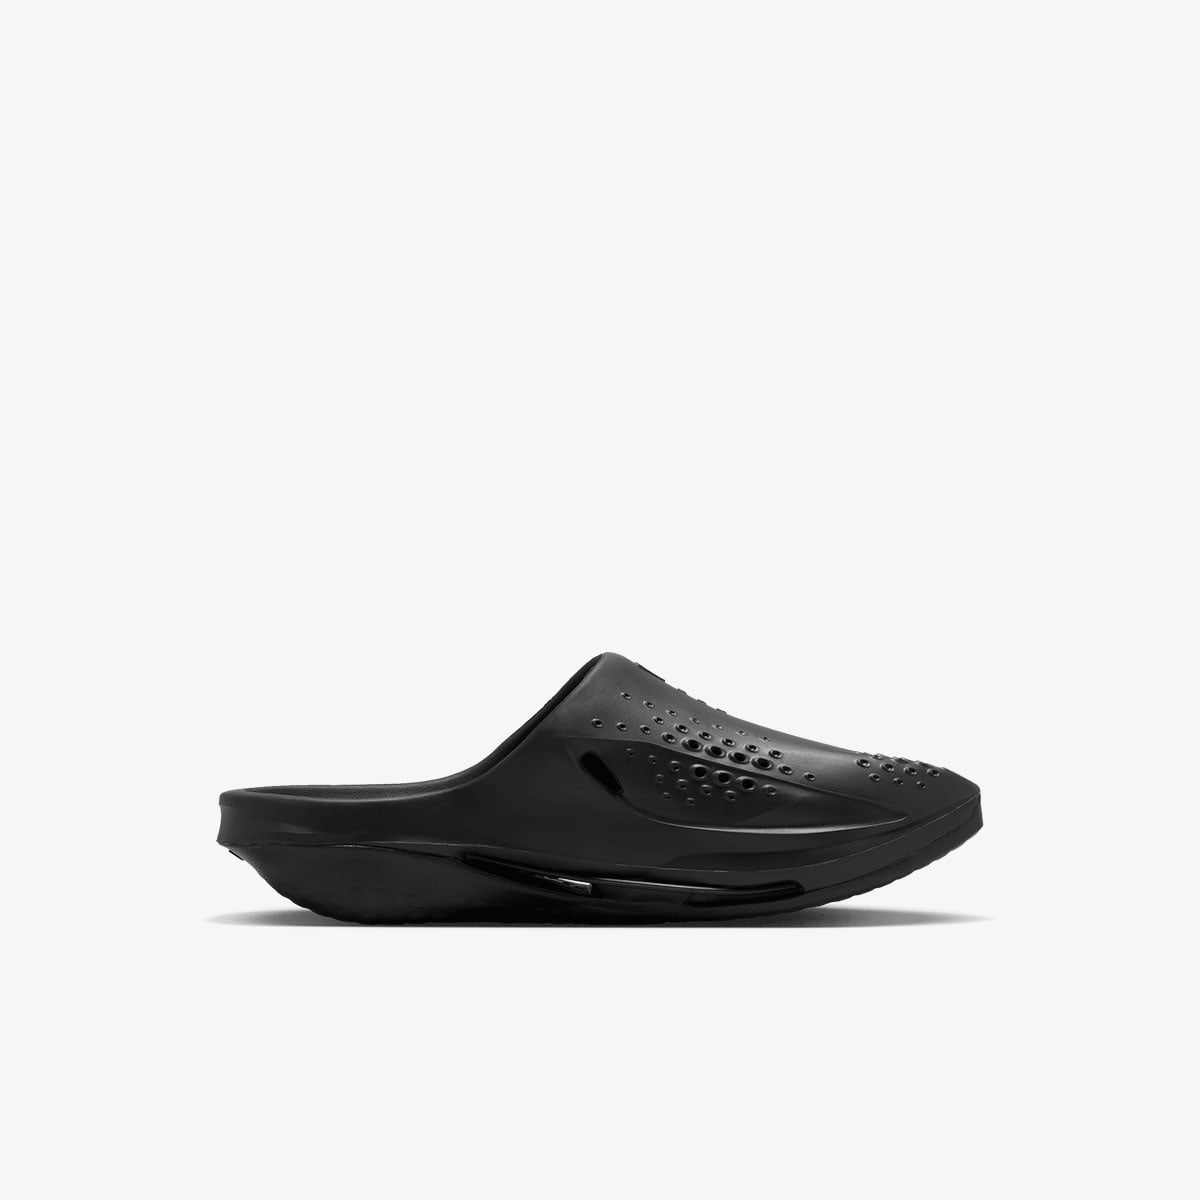 Nike x MMW 5 Slide (Black) | END. Launches